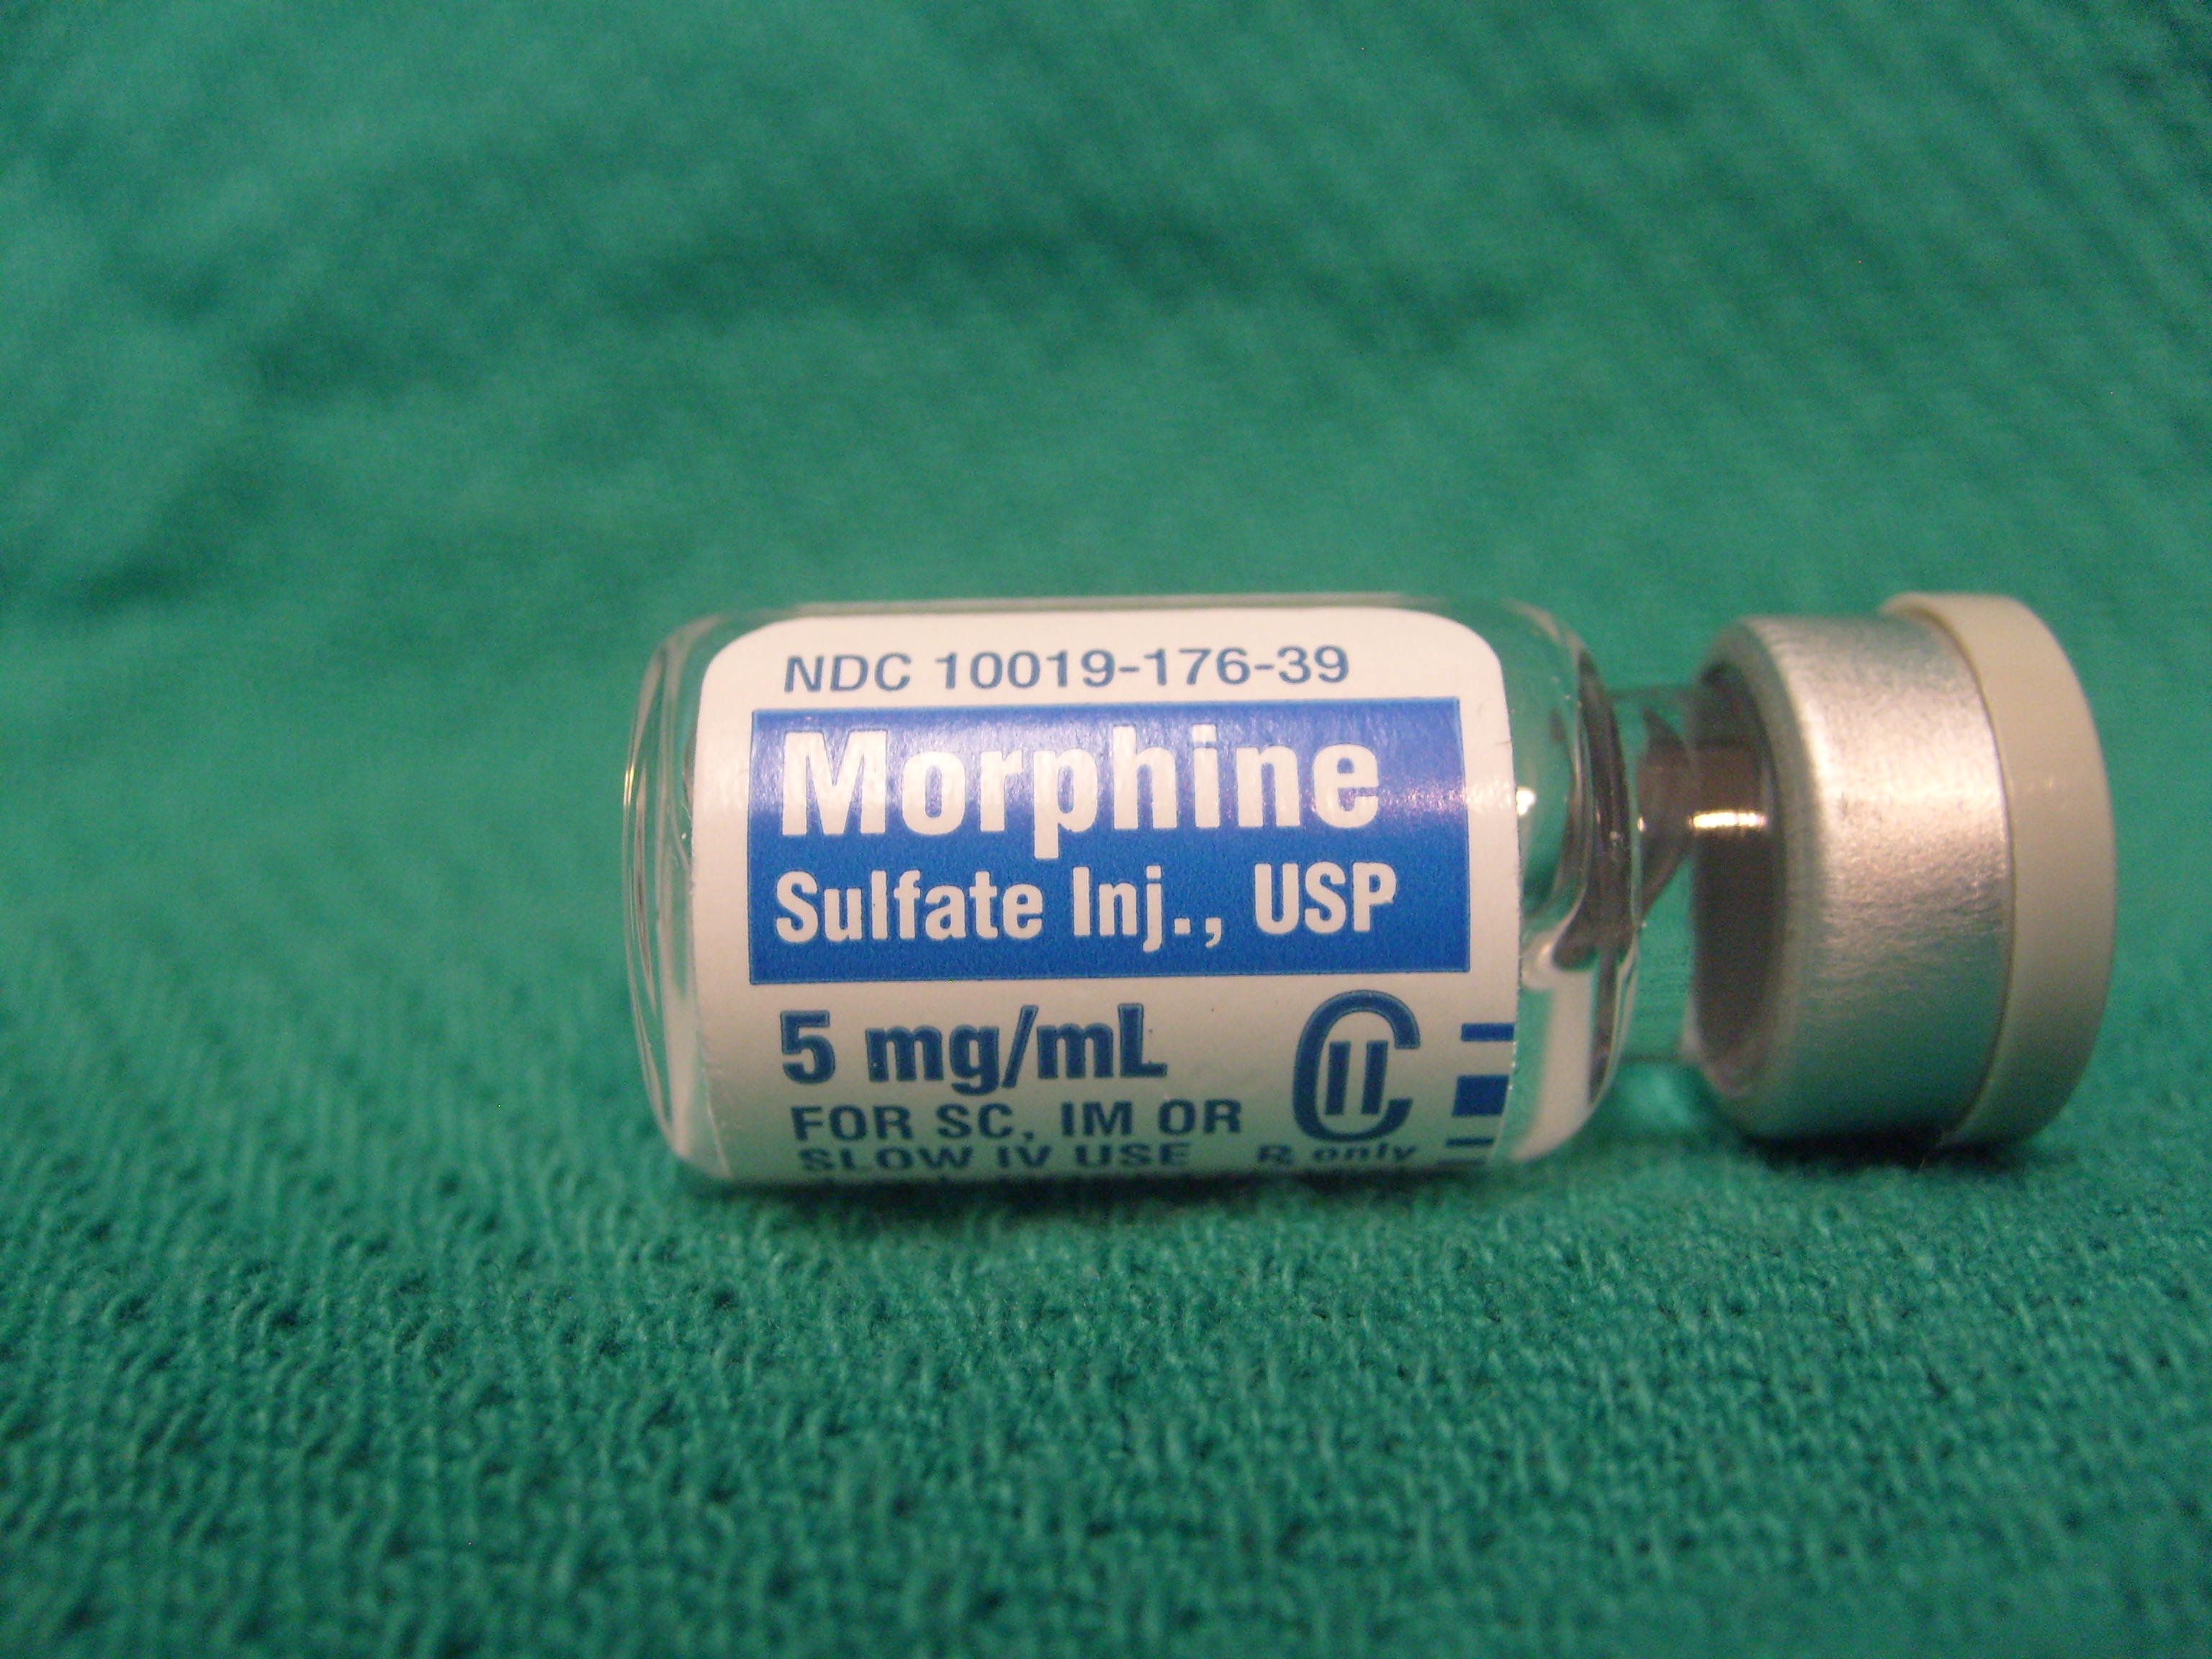 مورفین، دوایی که خود به درد تبدیل می شود/ از تنگی نفس تا ایست قلبی از عوارض هولناک این ماده مخدر/ سکته قلبی و کما با صرف بیش از حد مخدری به نام مورفین